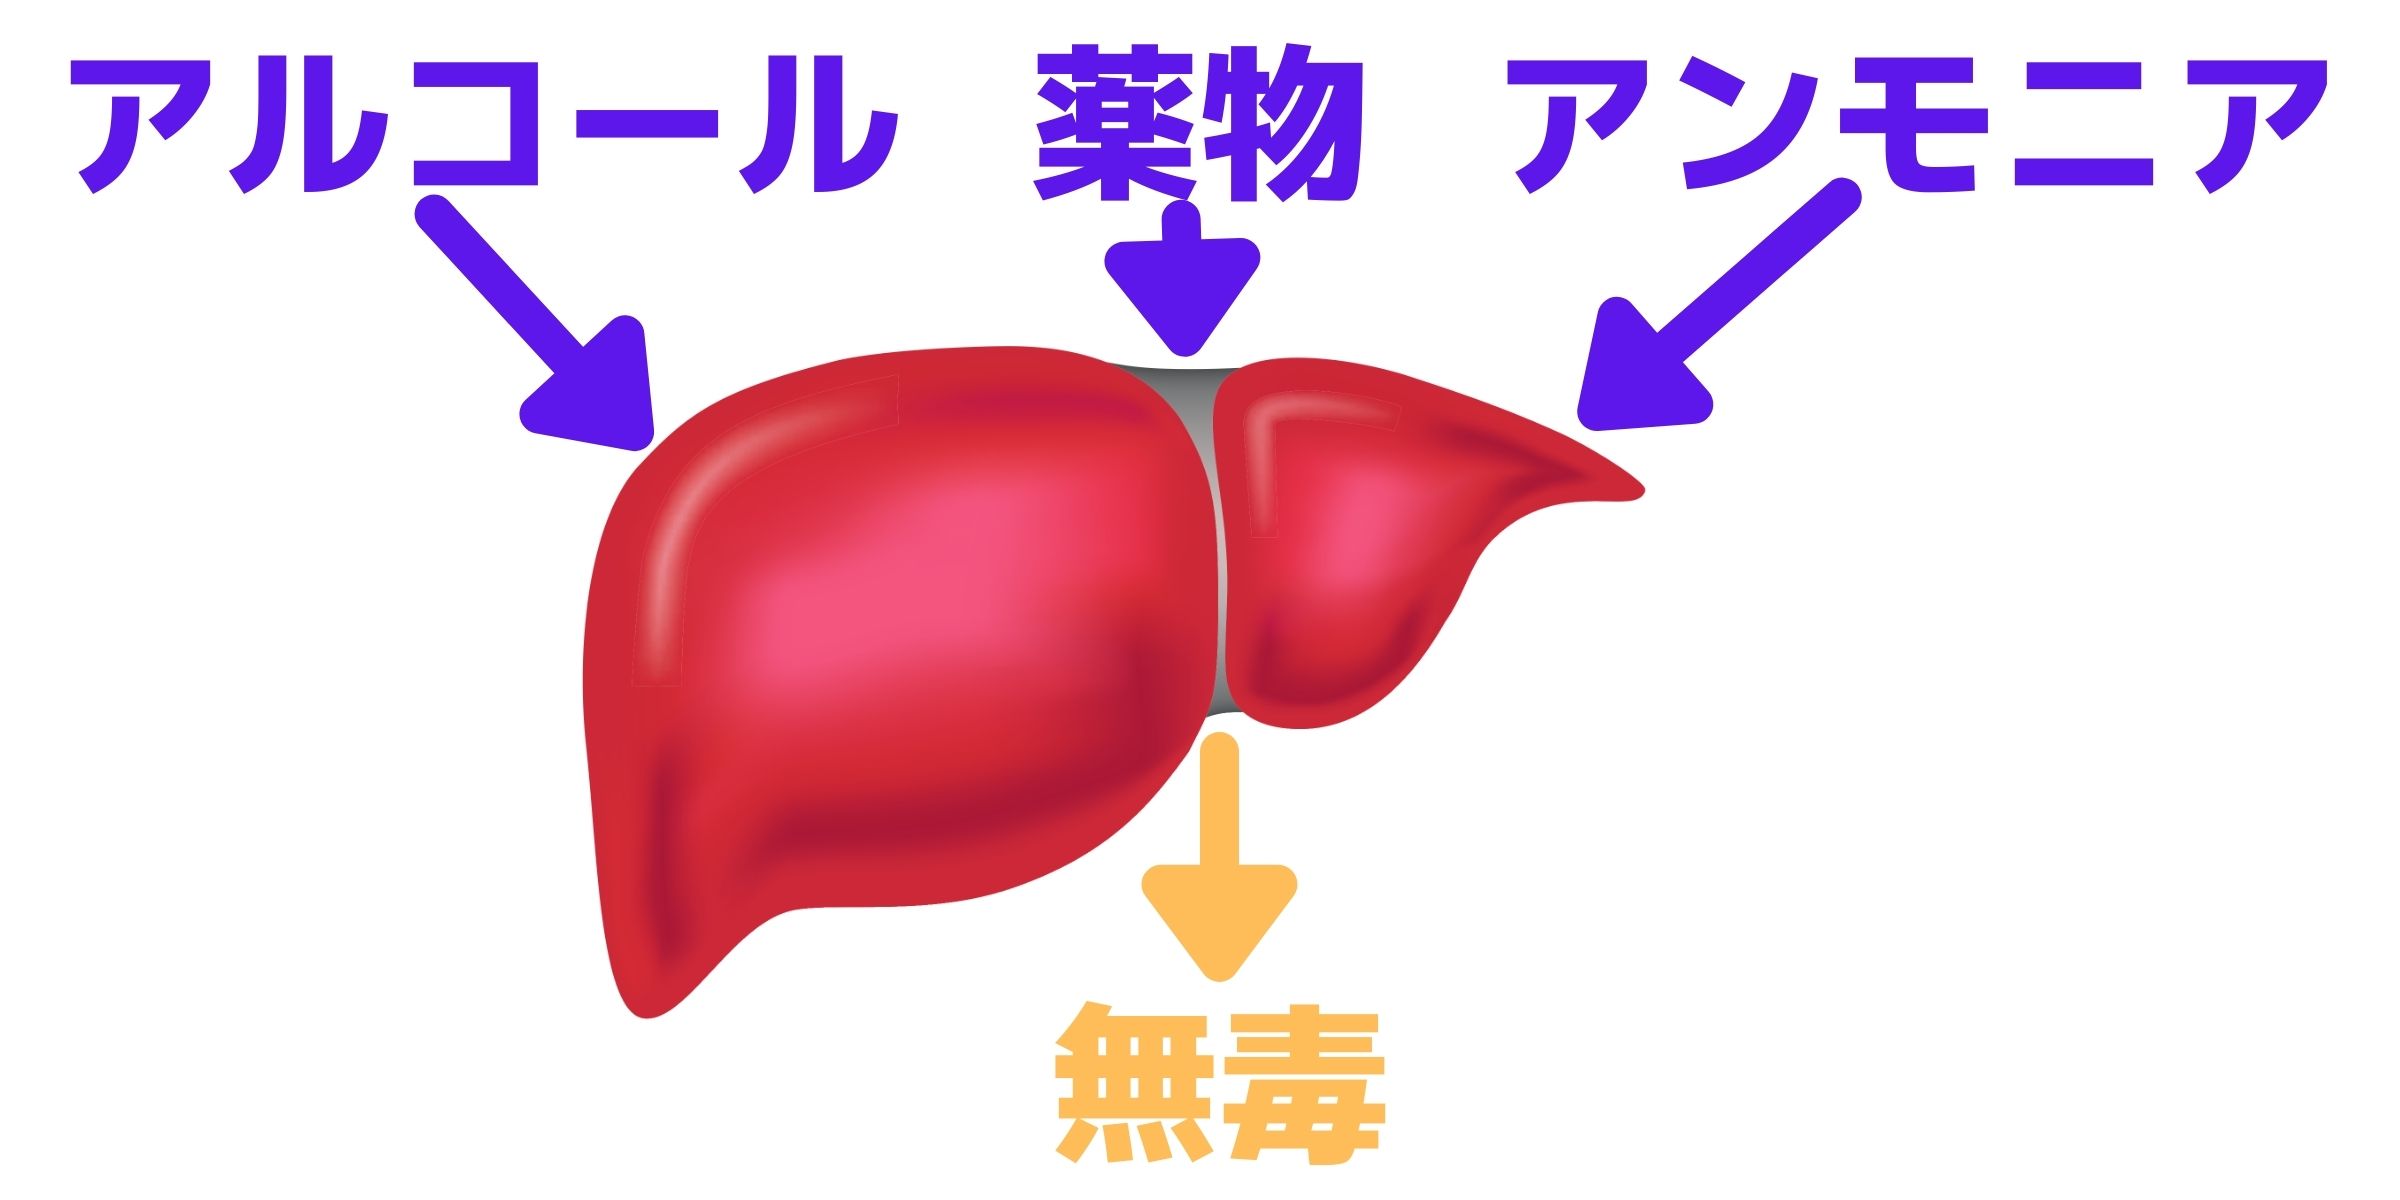 肝臓のデトックス作用の説明イラスト